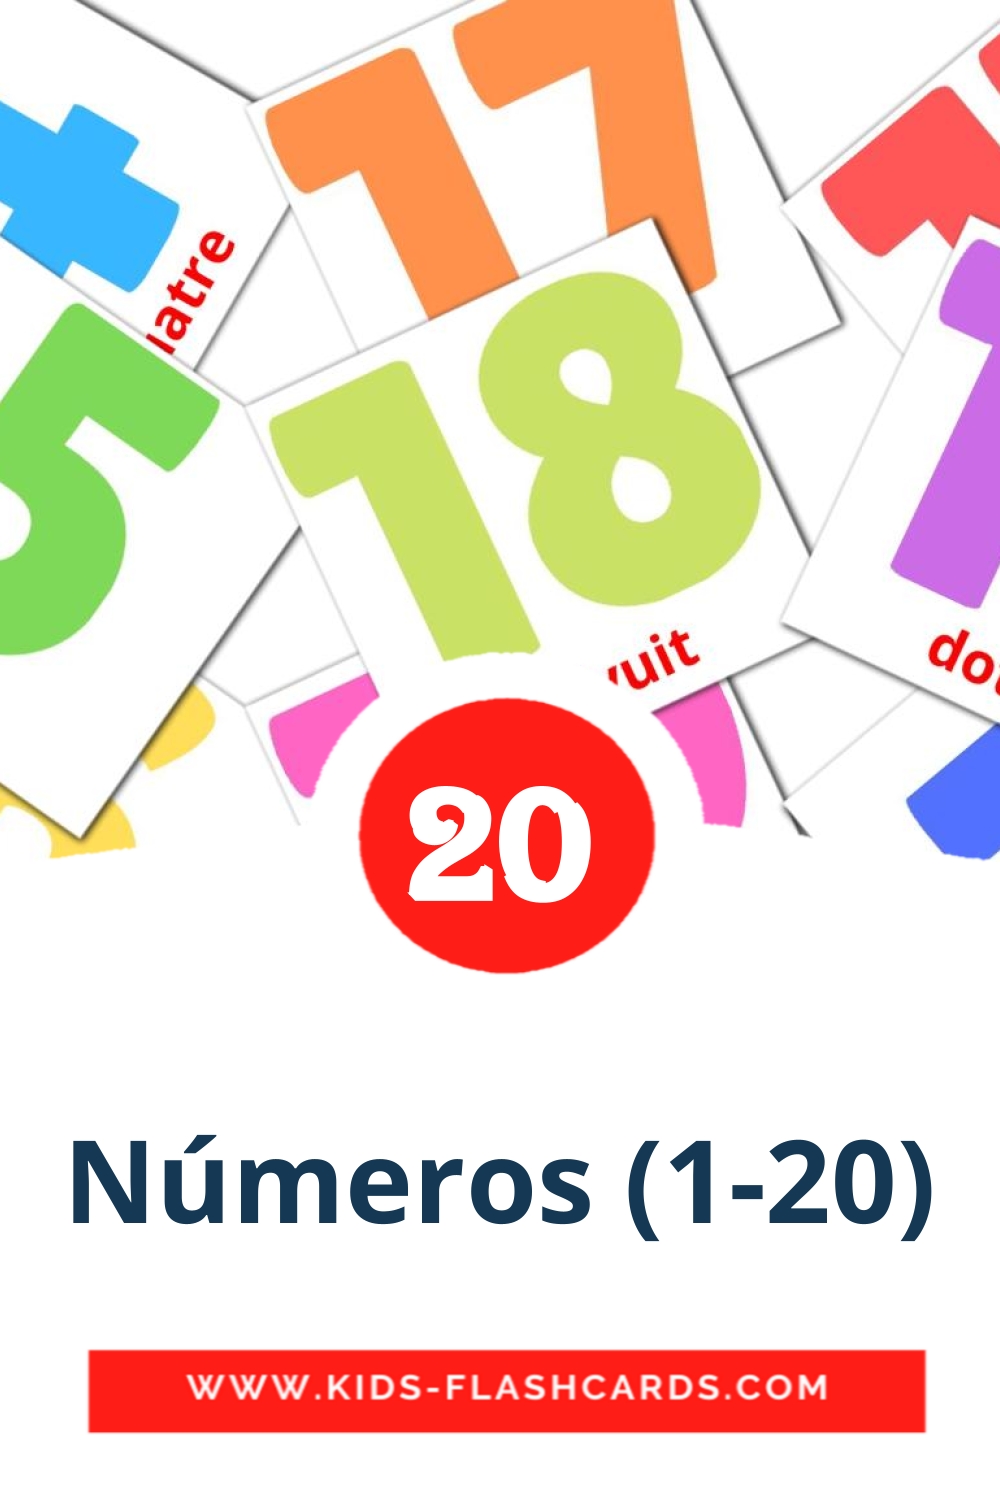 20 Números (1-20) fotokaarten voor kleuters in het catalaans